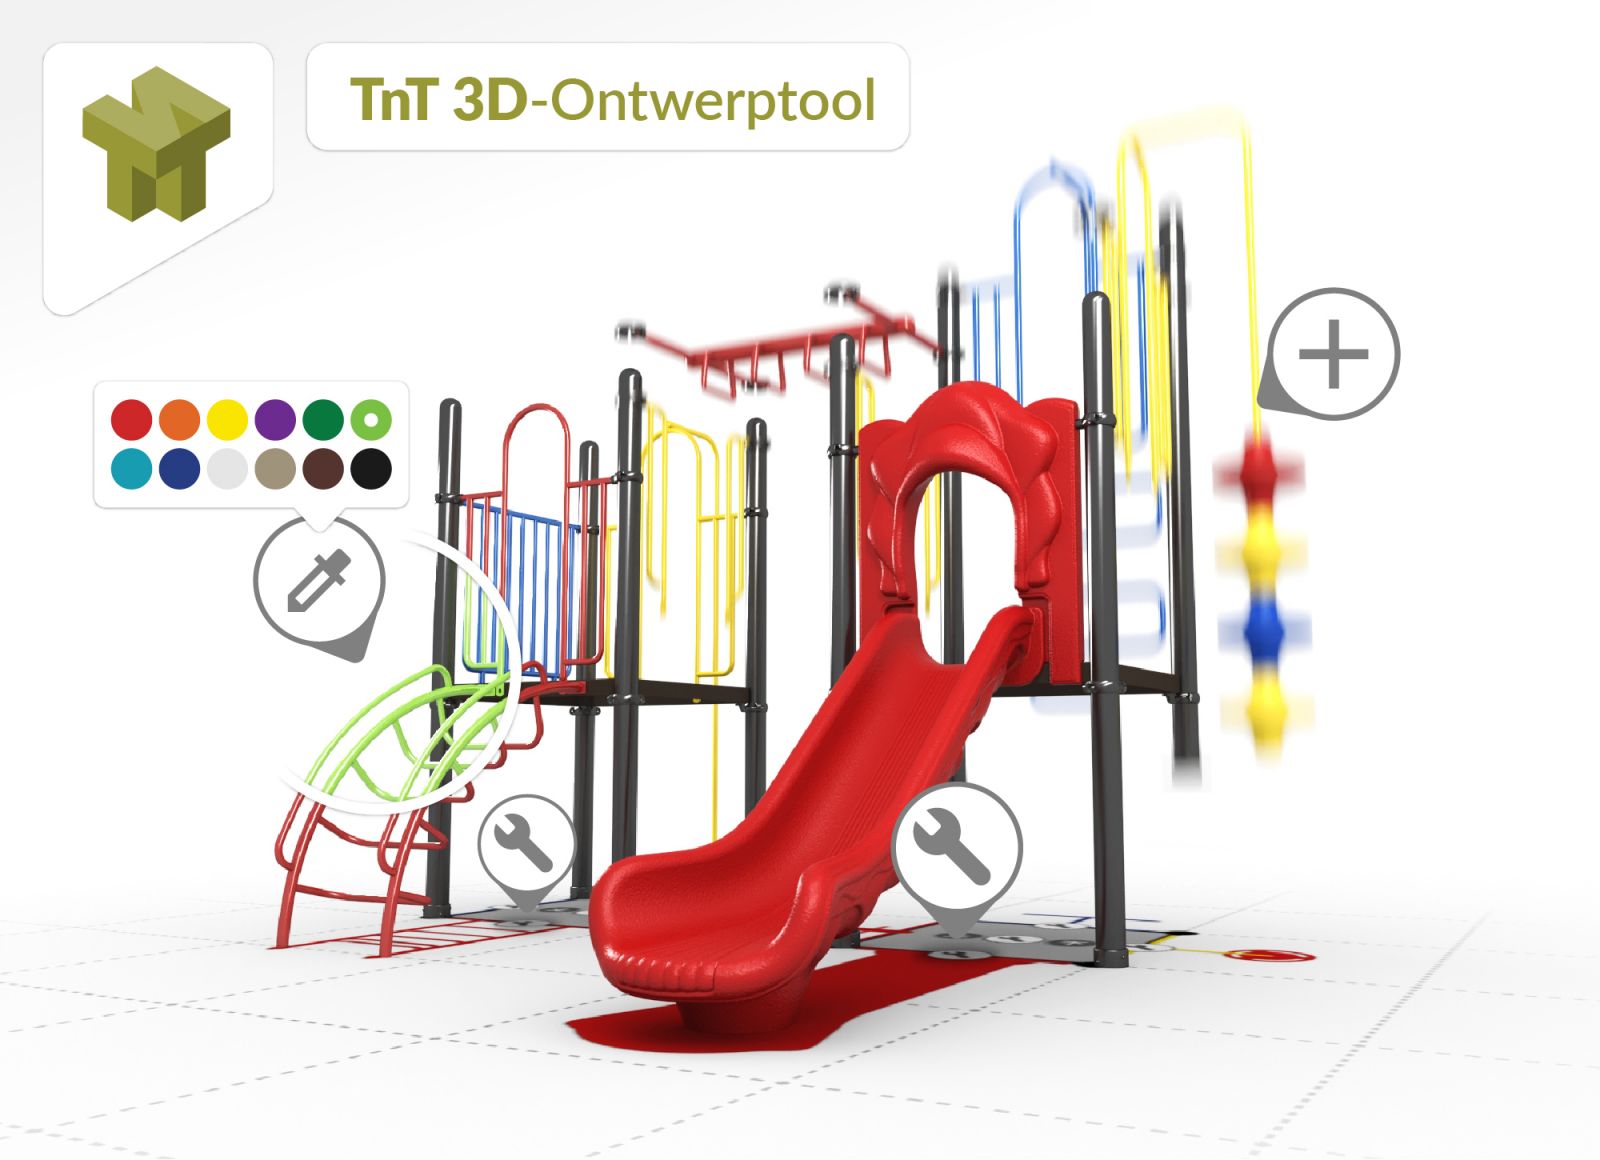 voorbeeld speeltoestel ontworpen in de TnT 3D-ontwerper